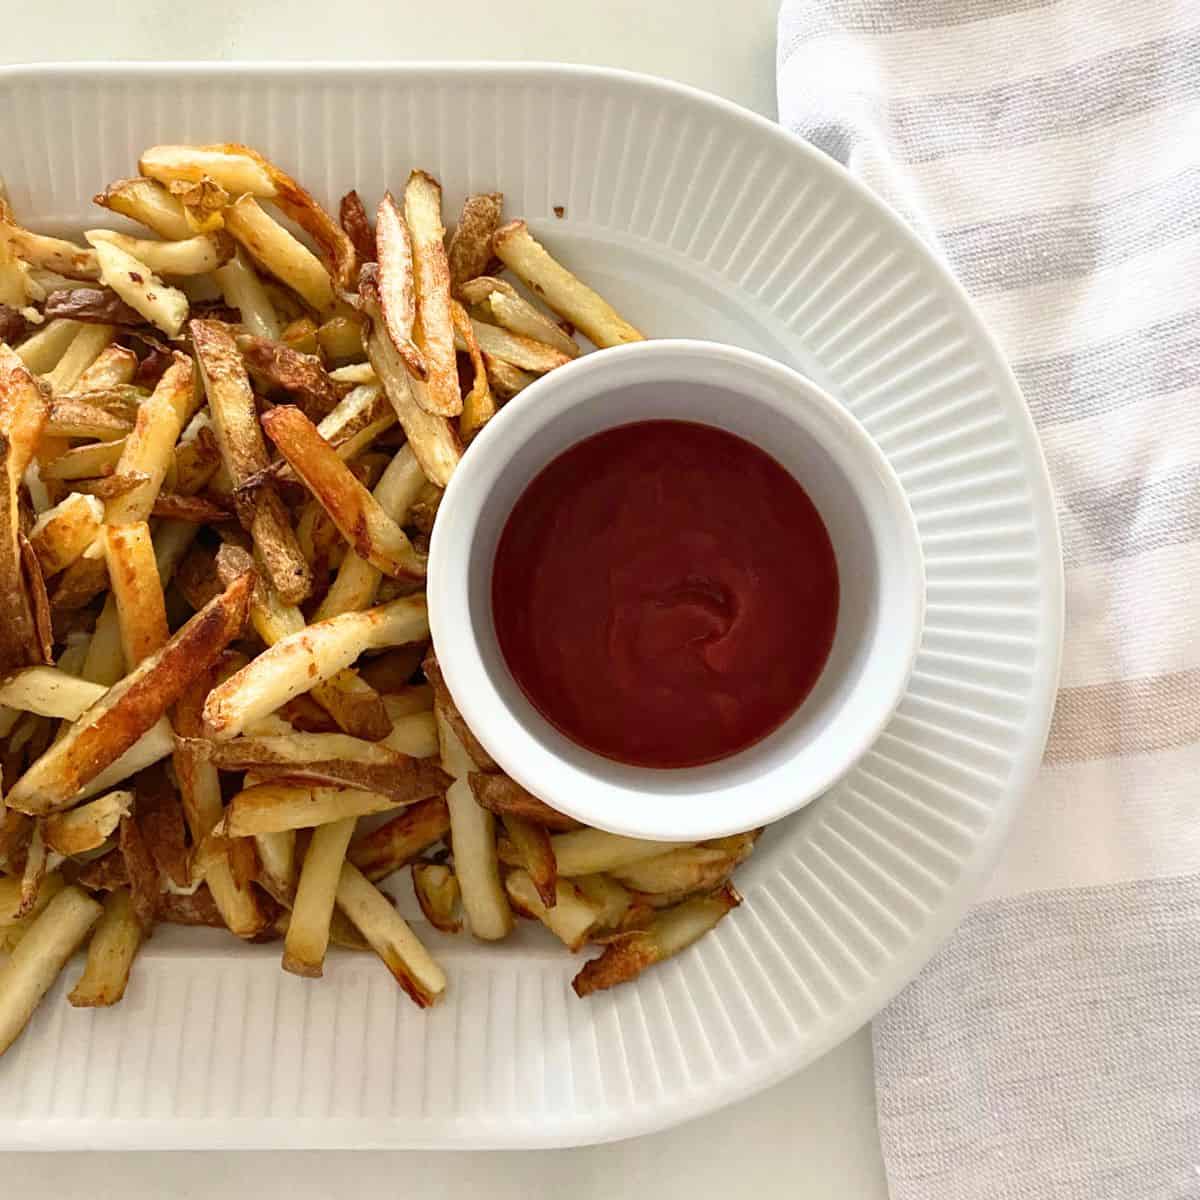 Platter of oven baked fries